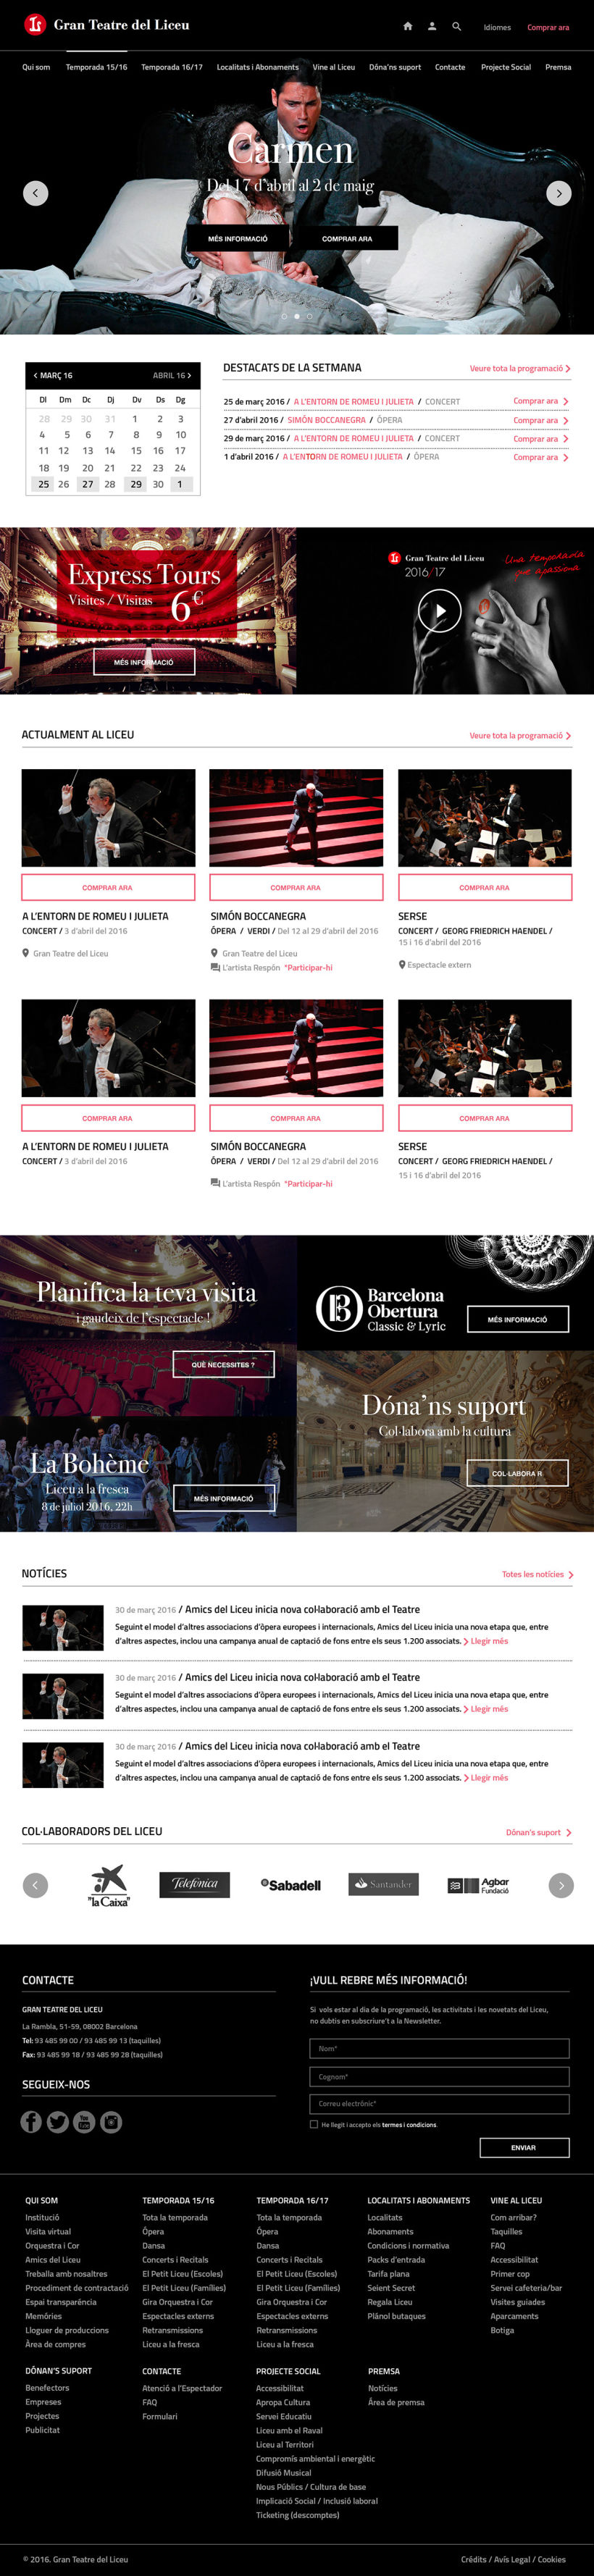 Propuesta de diseño web para Teatre del Liceu 2